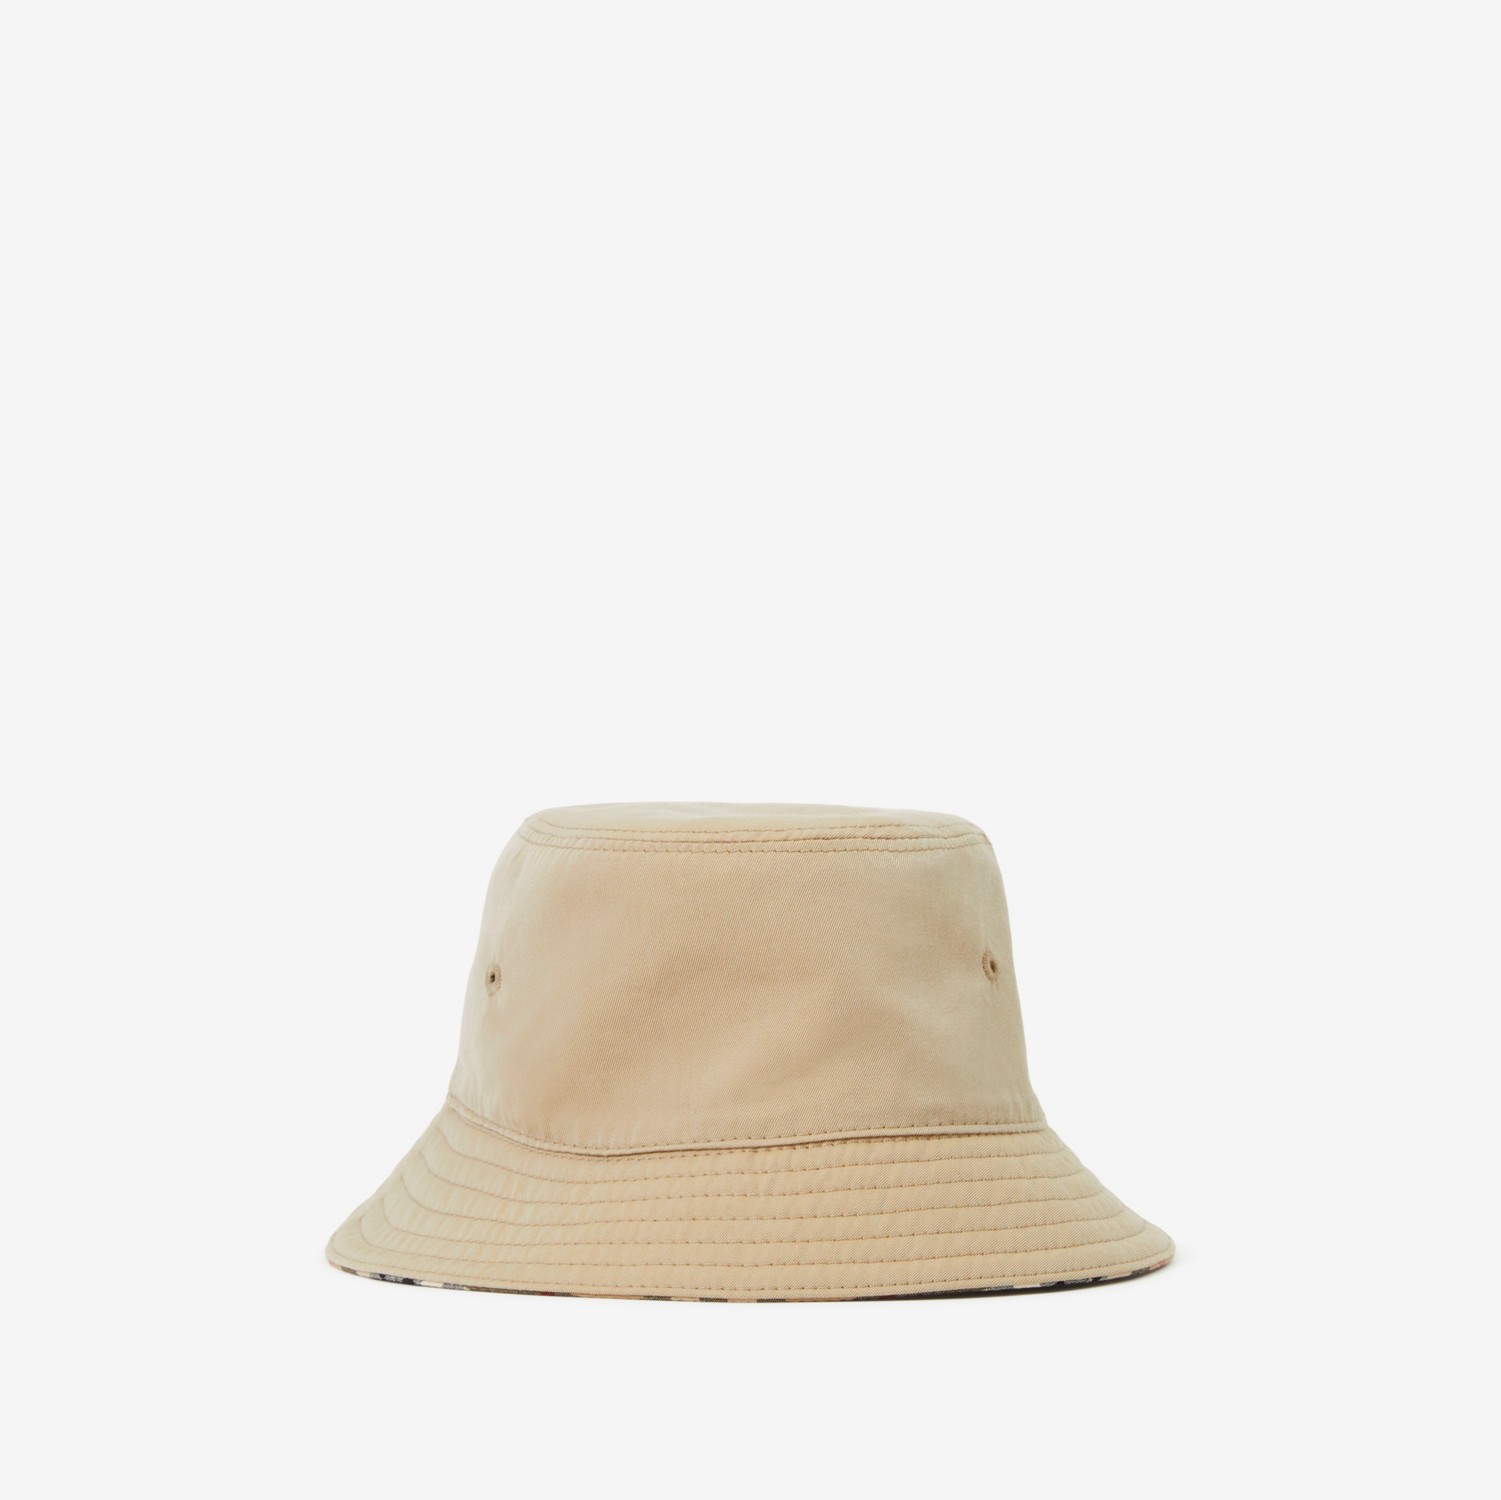 Sombrero de pesca reversible Check